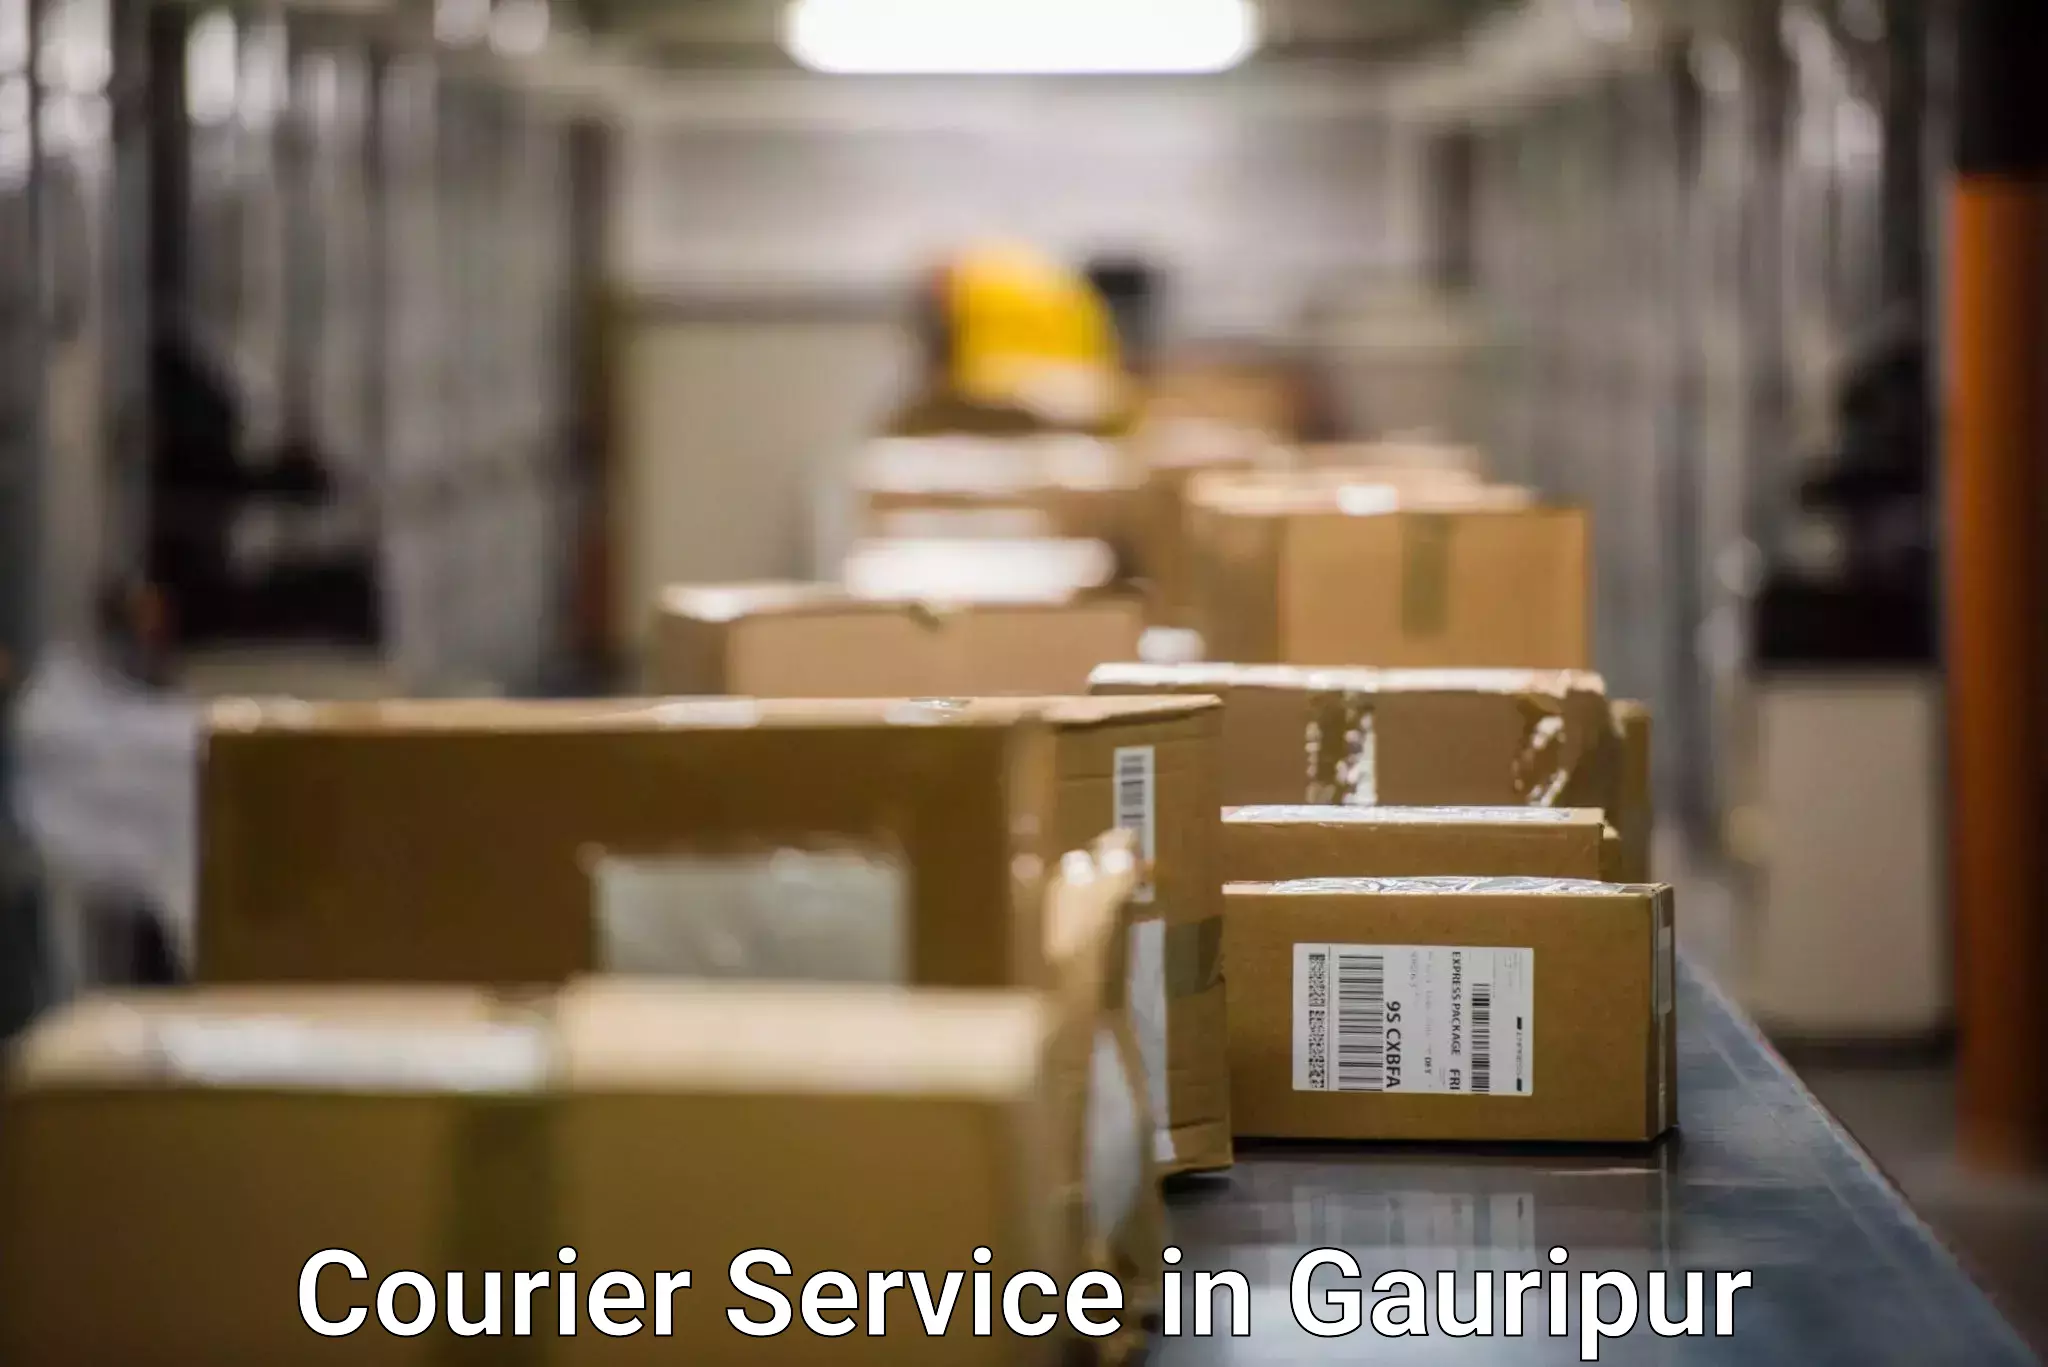 Express package handling in Gauripur